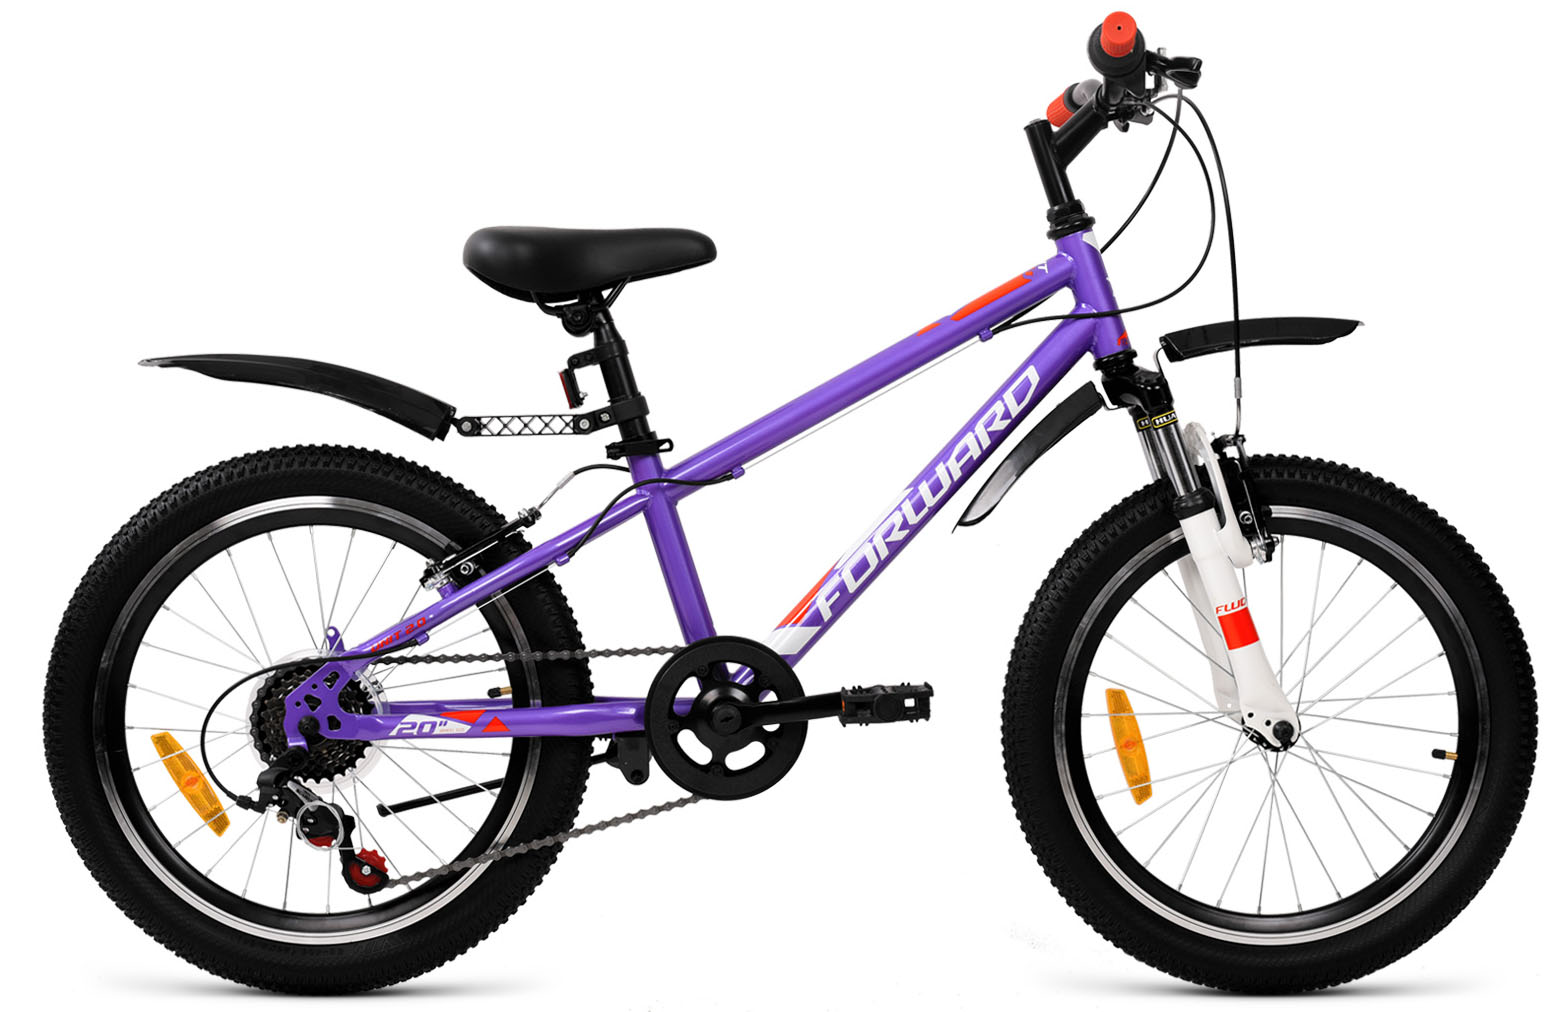  Отзывы о Детском велосипеде Forward Unit 20 2.0 2019